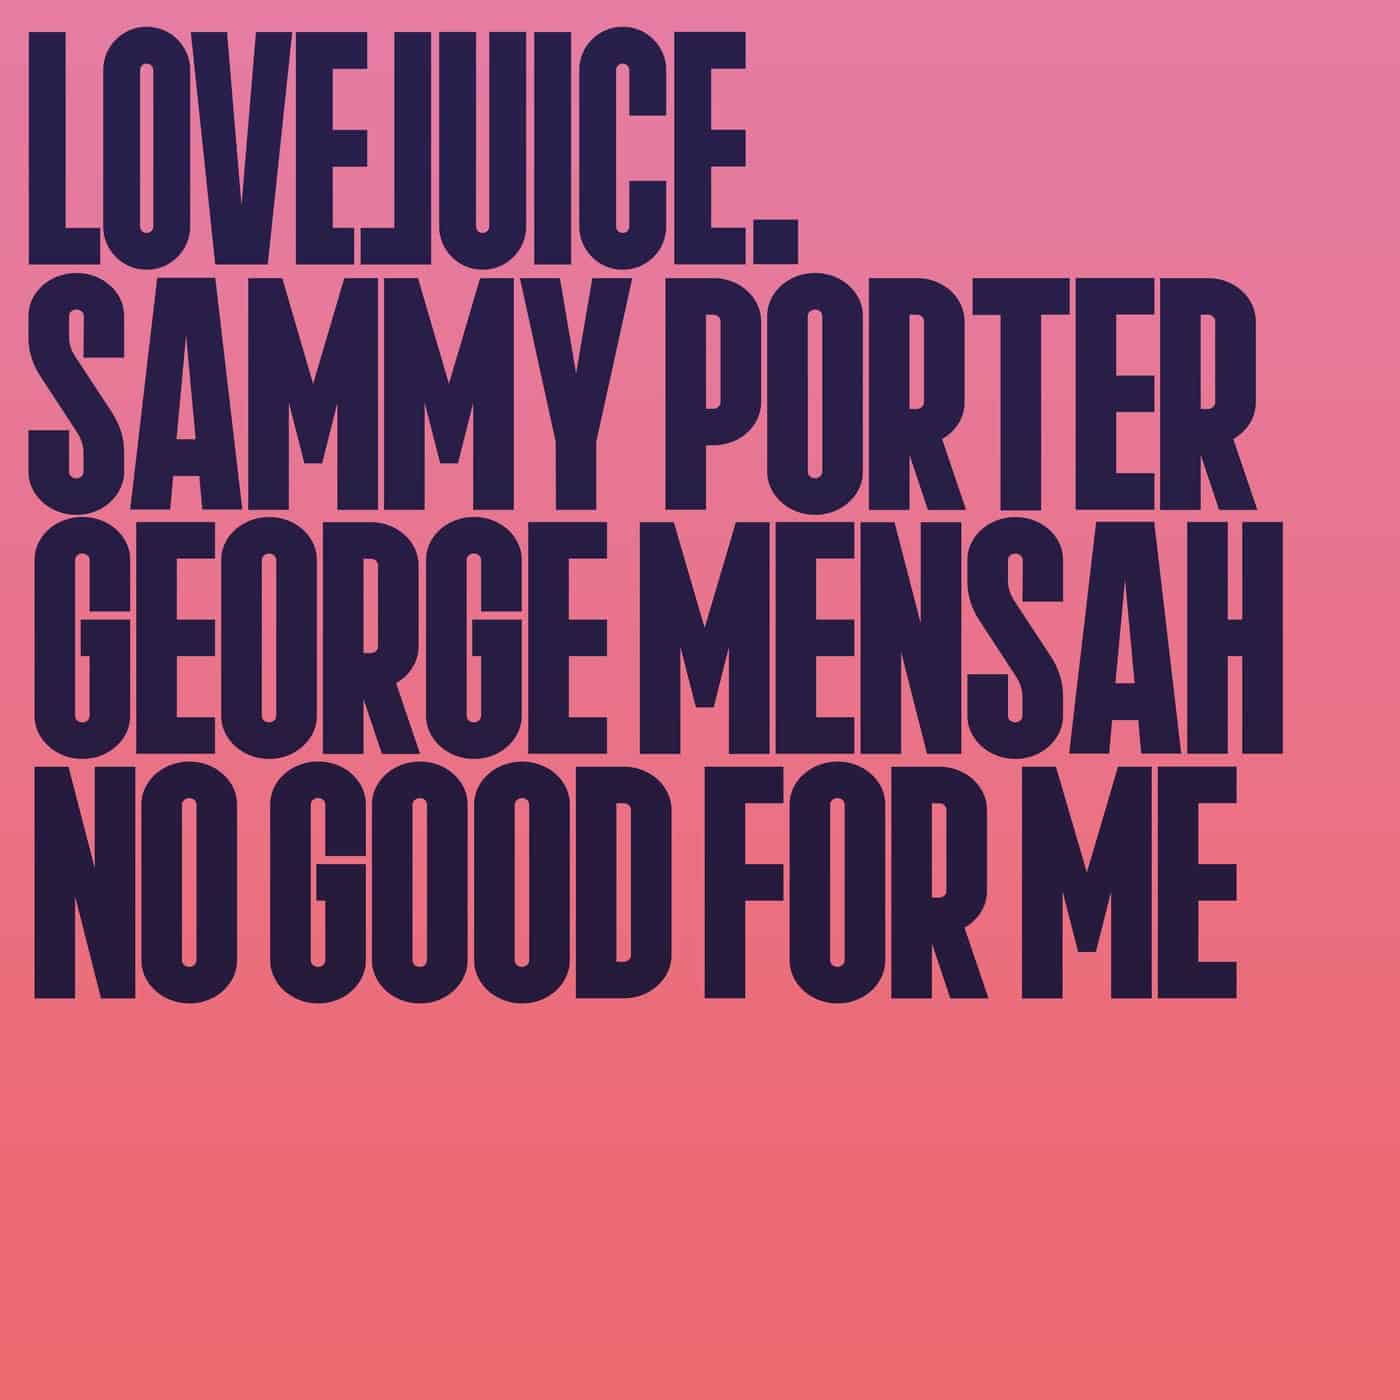 Download Sammy Porter, George Mensah - No Good For Me on Electrobuzz